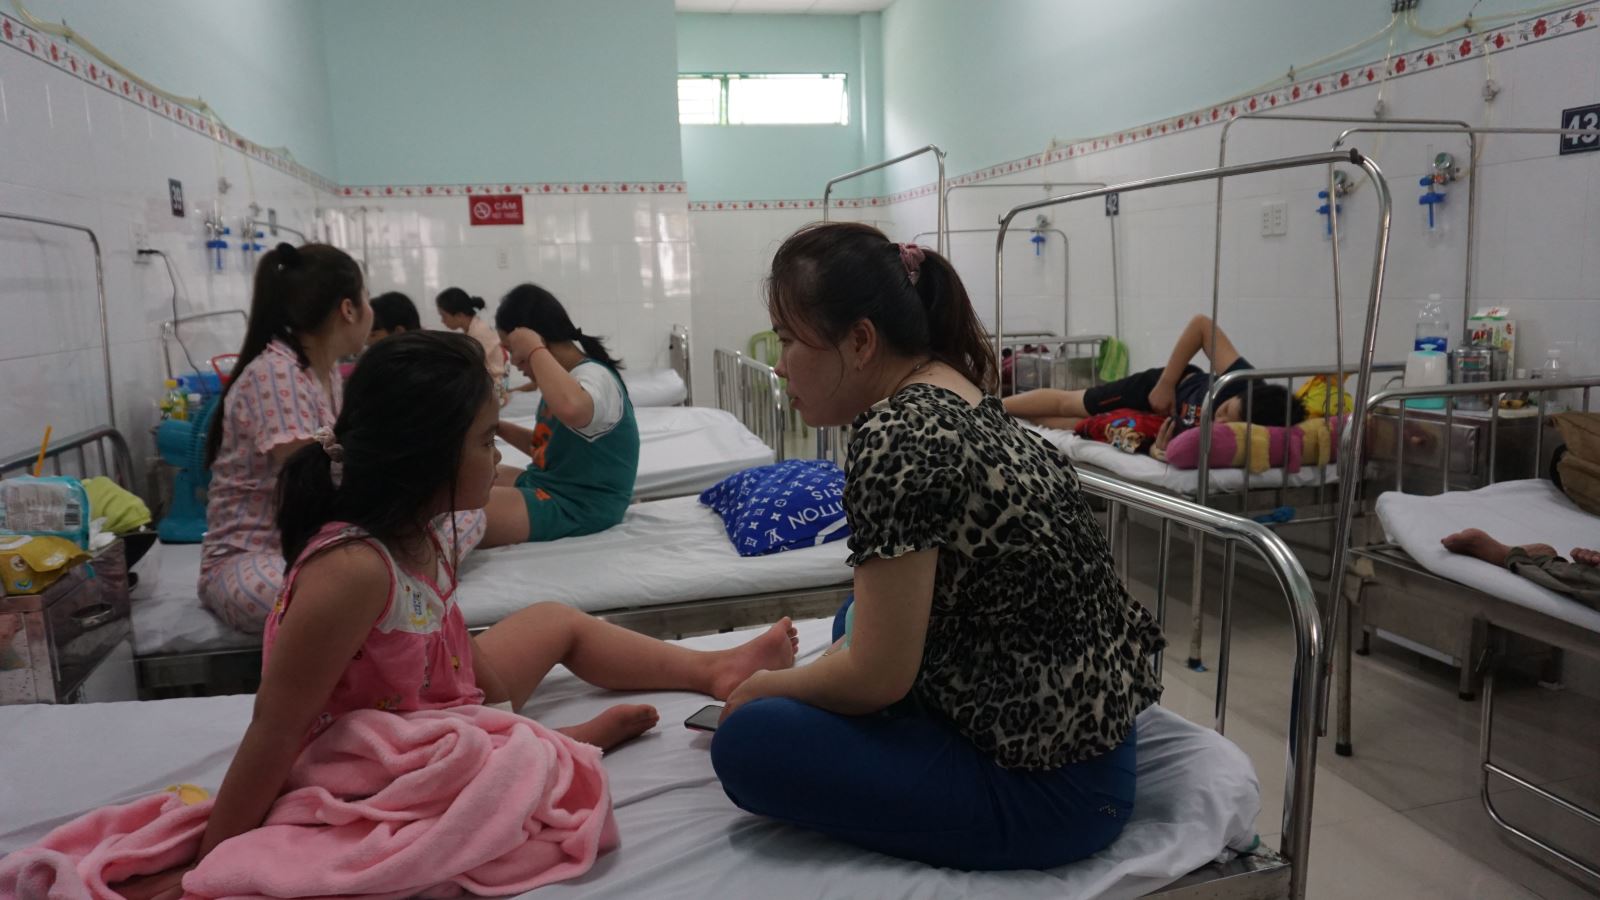 TP Hồ Chí Minh: Số ca mắc sốt xuất huyết vẫn ở mức cao - Ảnh 1.